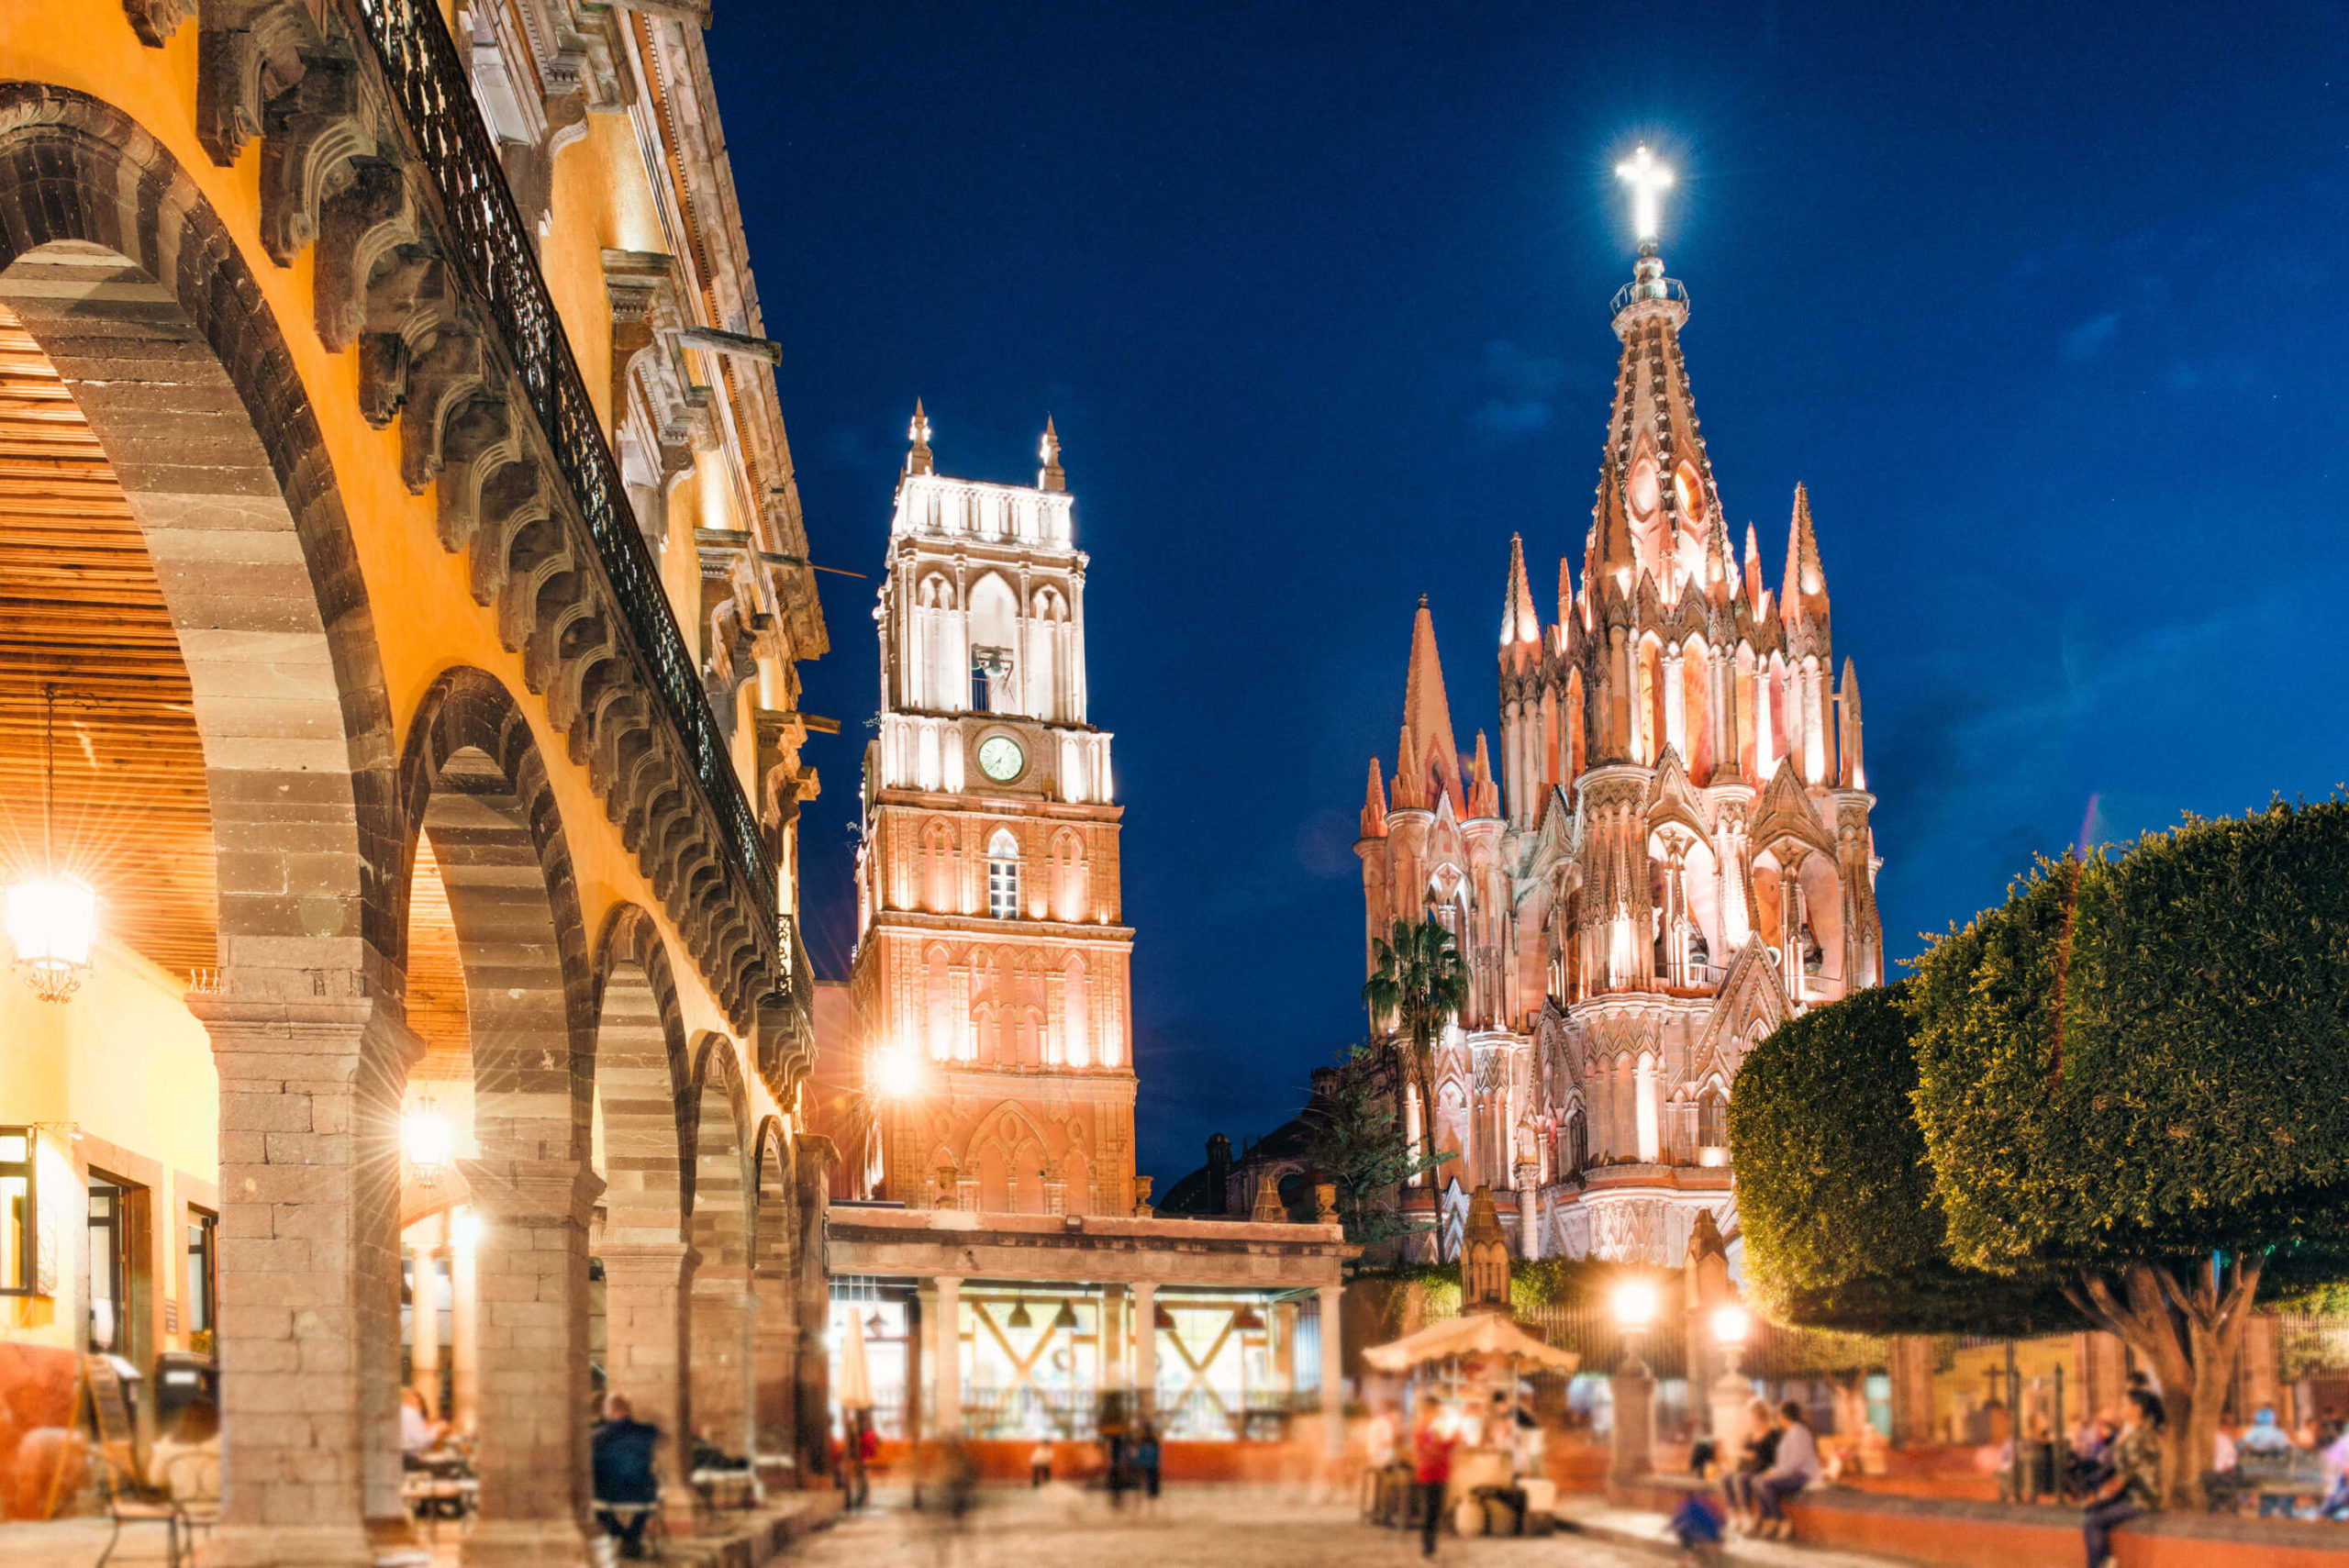 San Miguel de Allende in Mexico